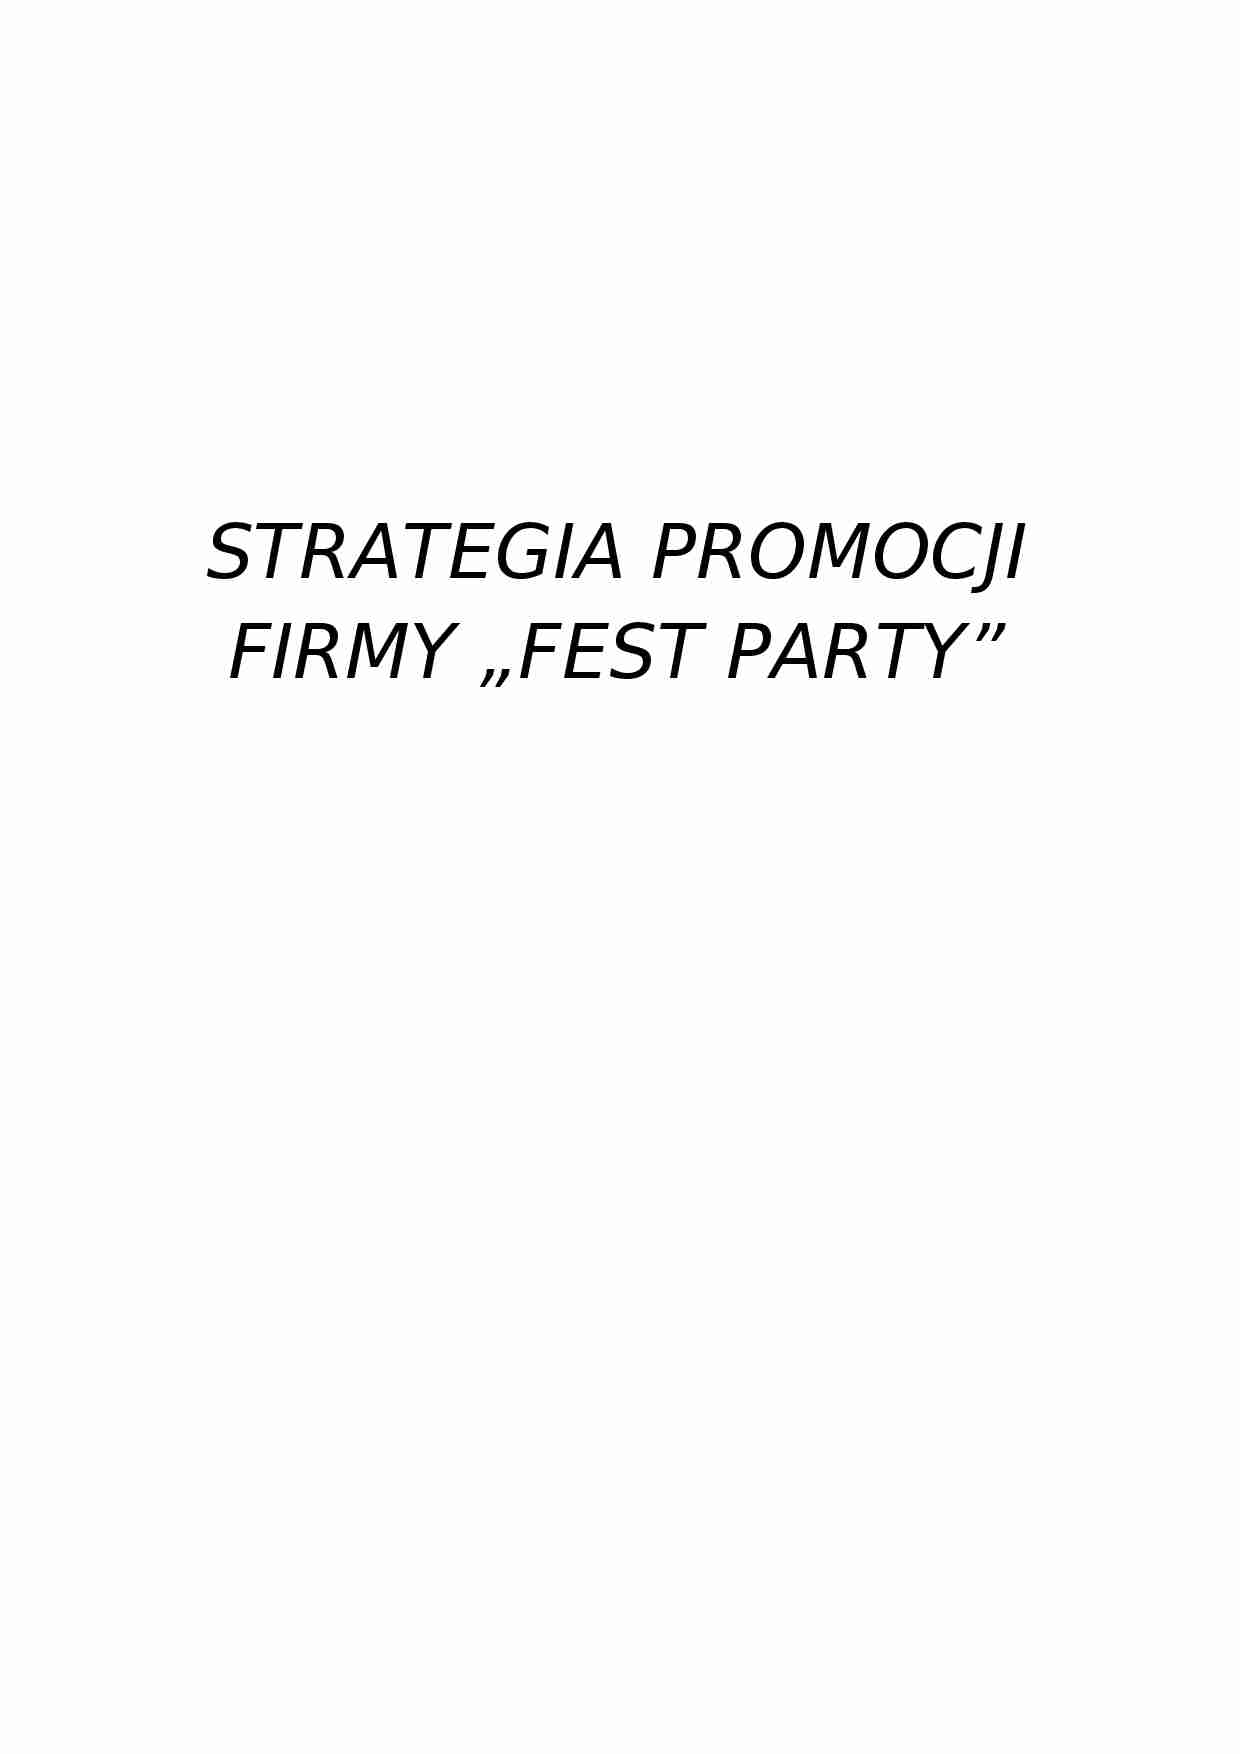 Strategia promocyjna firmy - strona 1